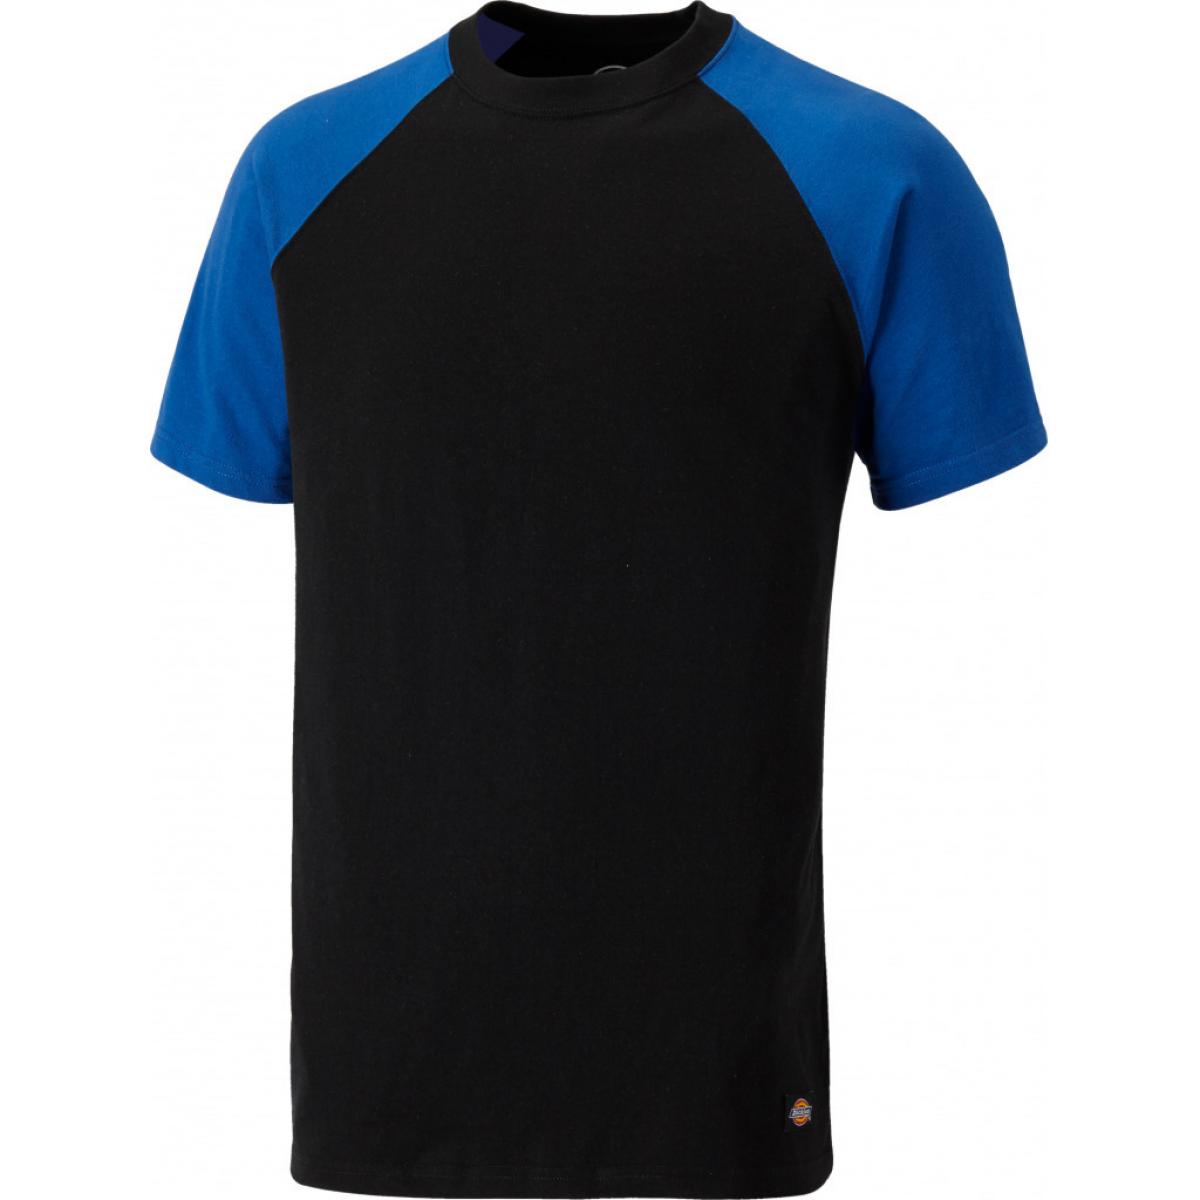 Hersteller: Dickies Herstellernummer: SH2007 Artikelbezeichnung: Zweifarbiges T-Shirt Farbe: Schwarz/Königsblau